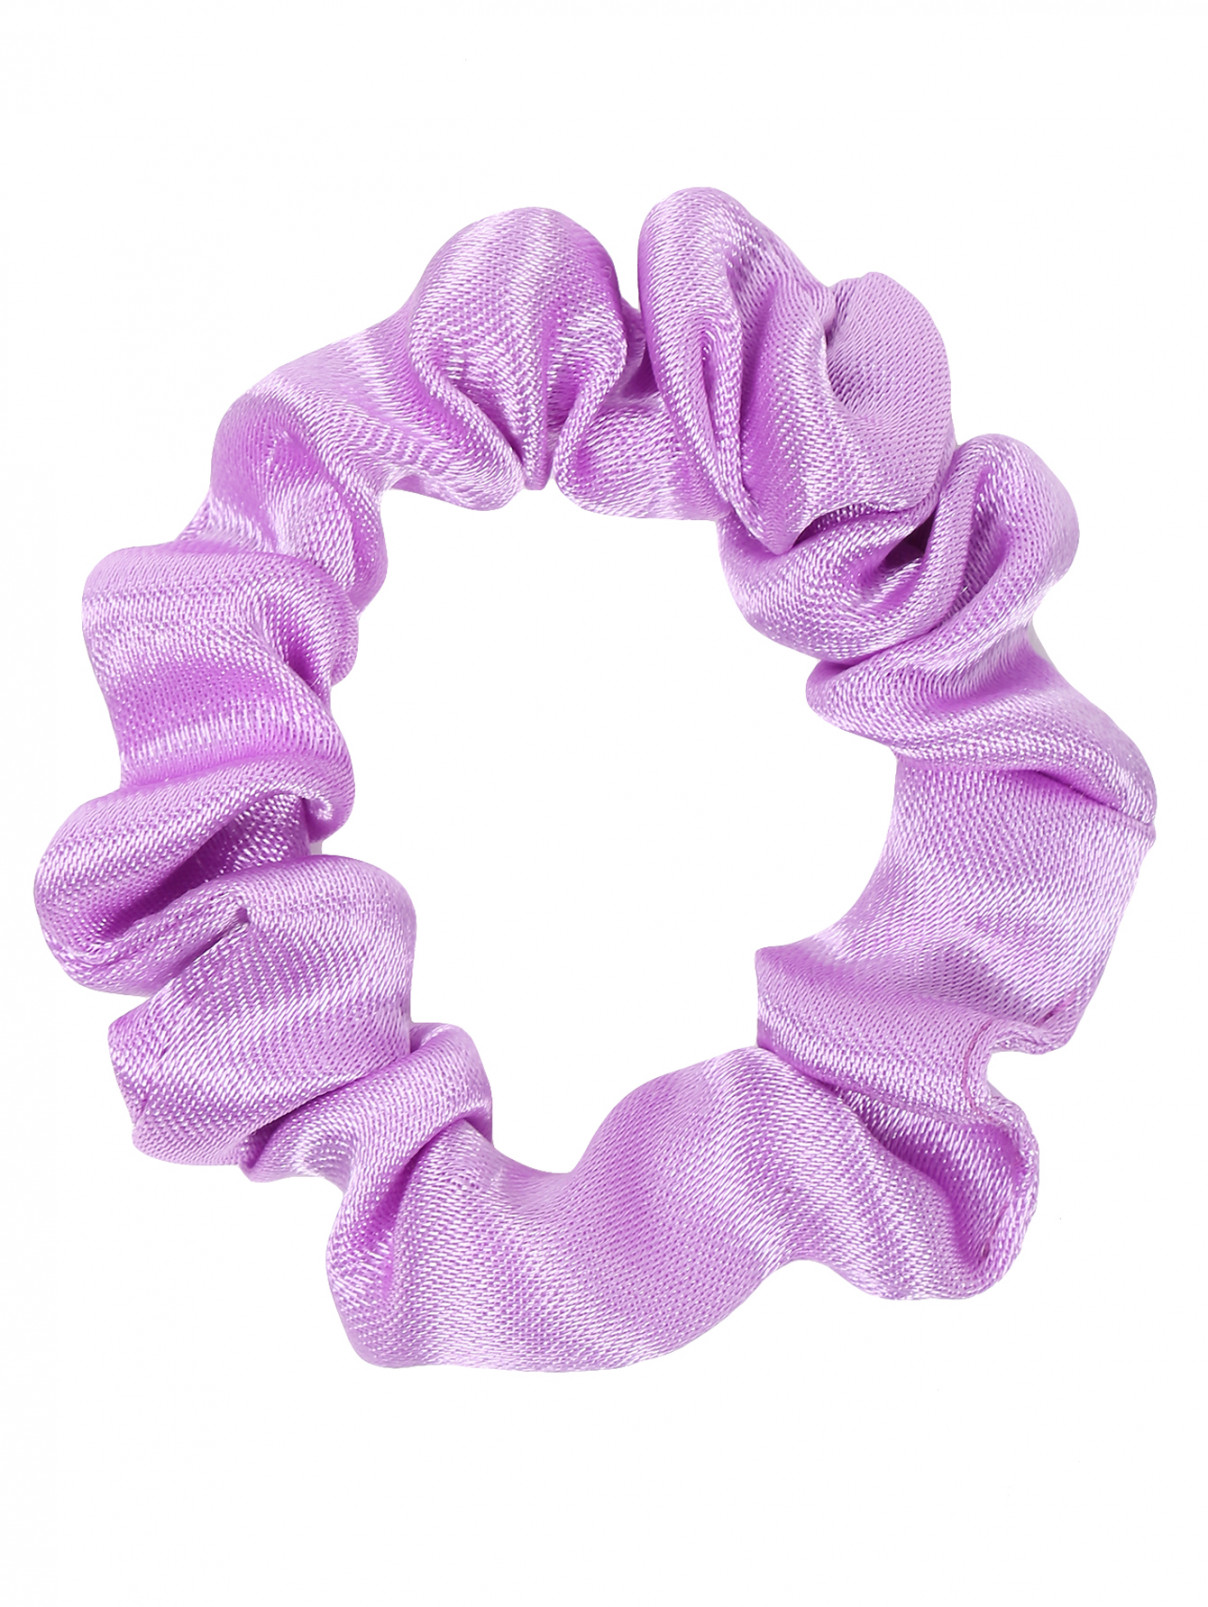 Резинка для волос KL  –  Общий вид  – Цвет:  Фиолетовый